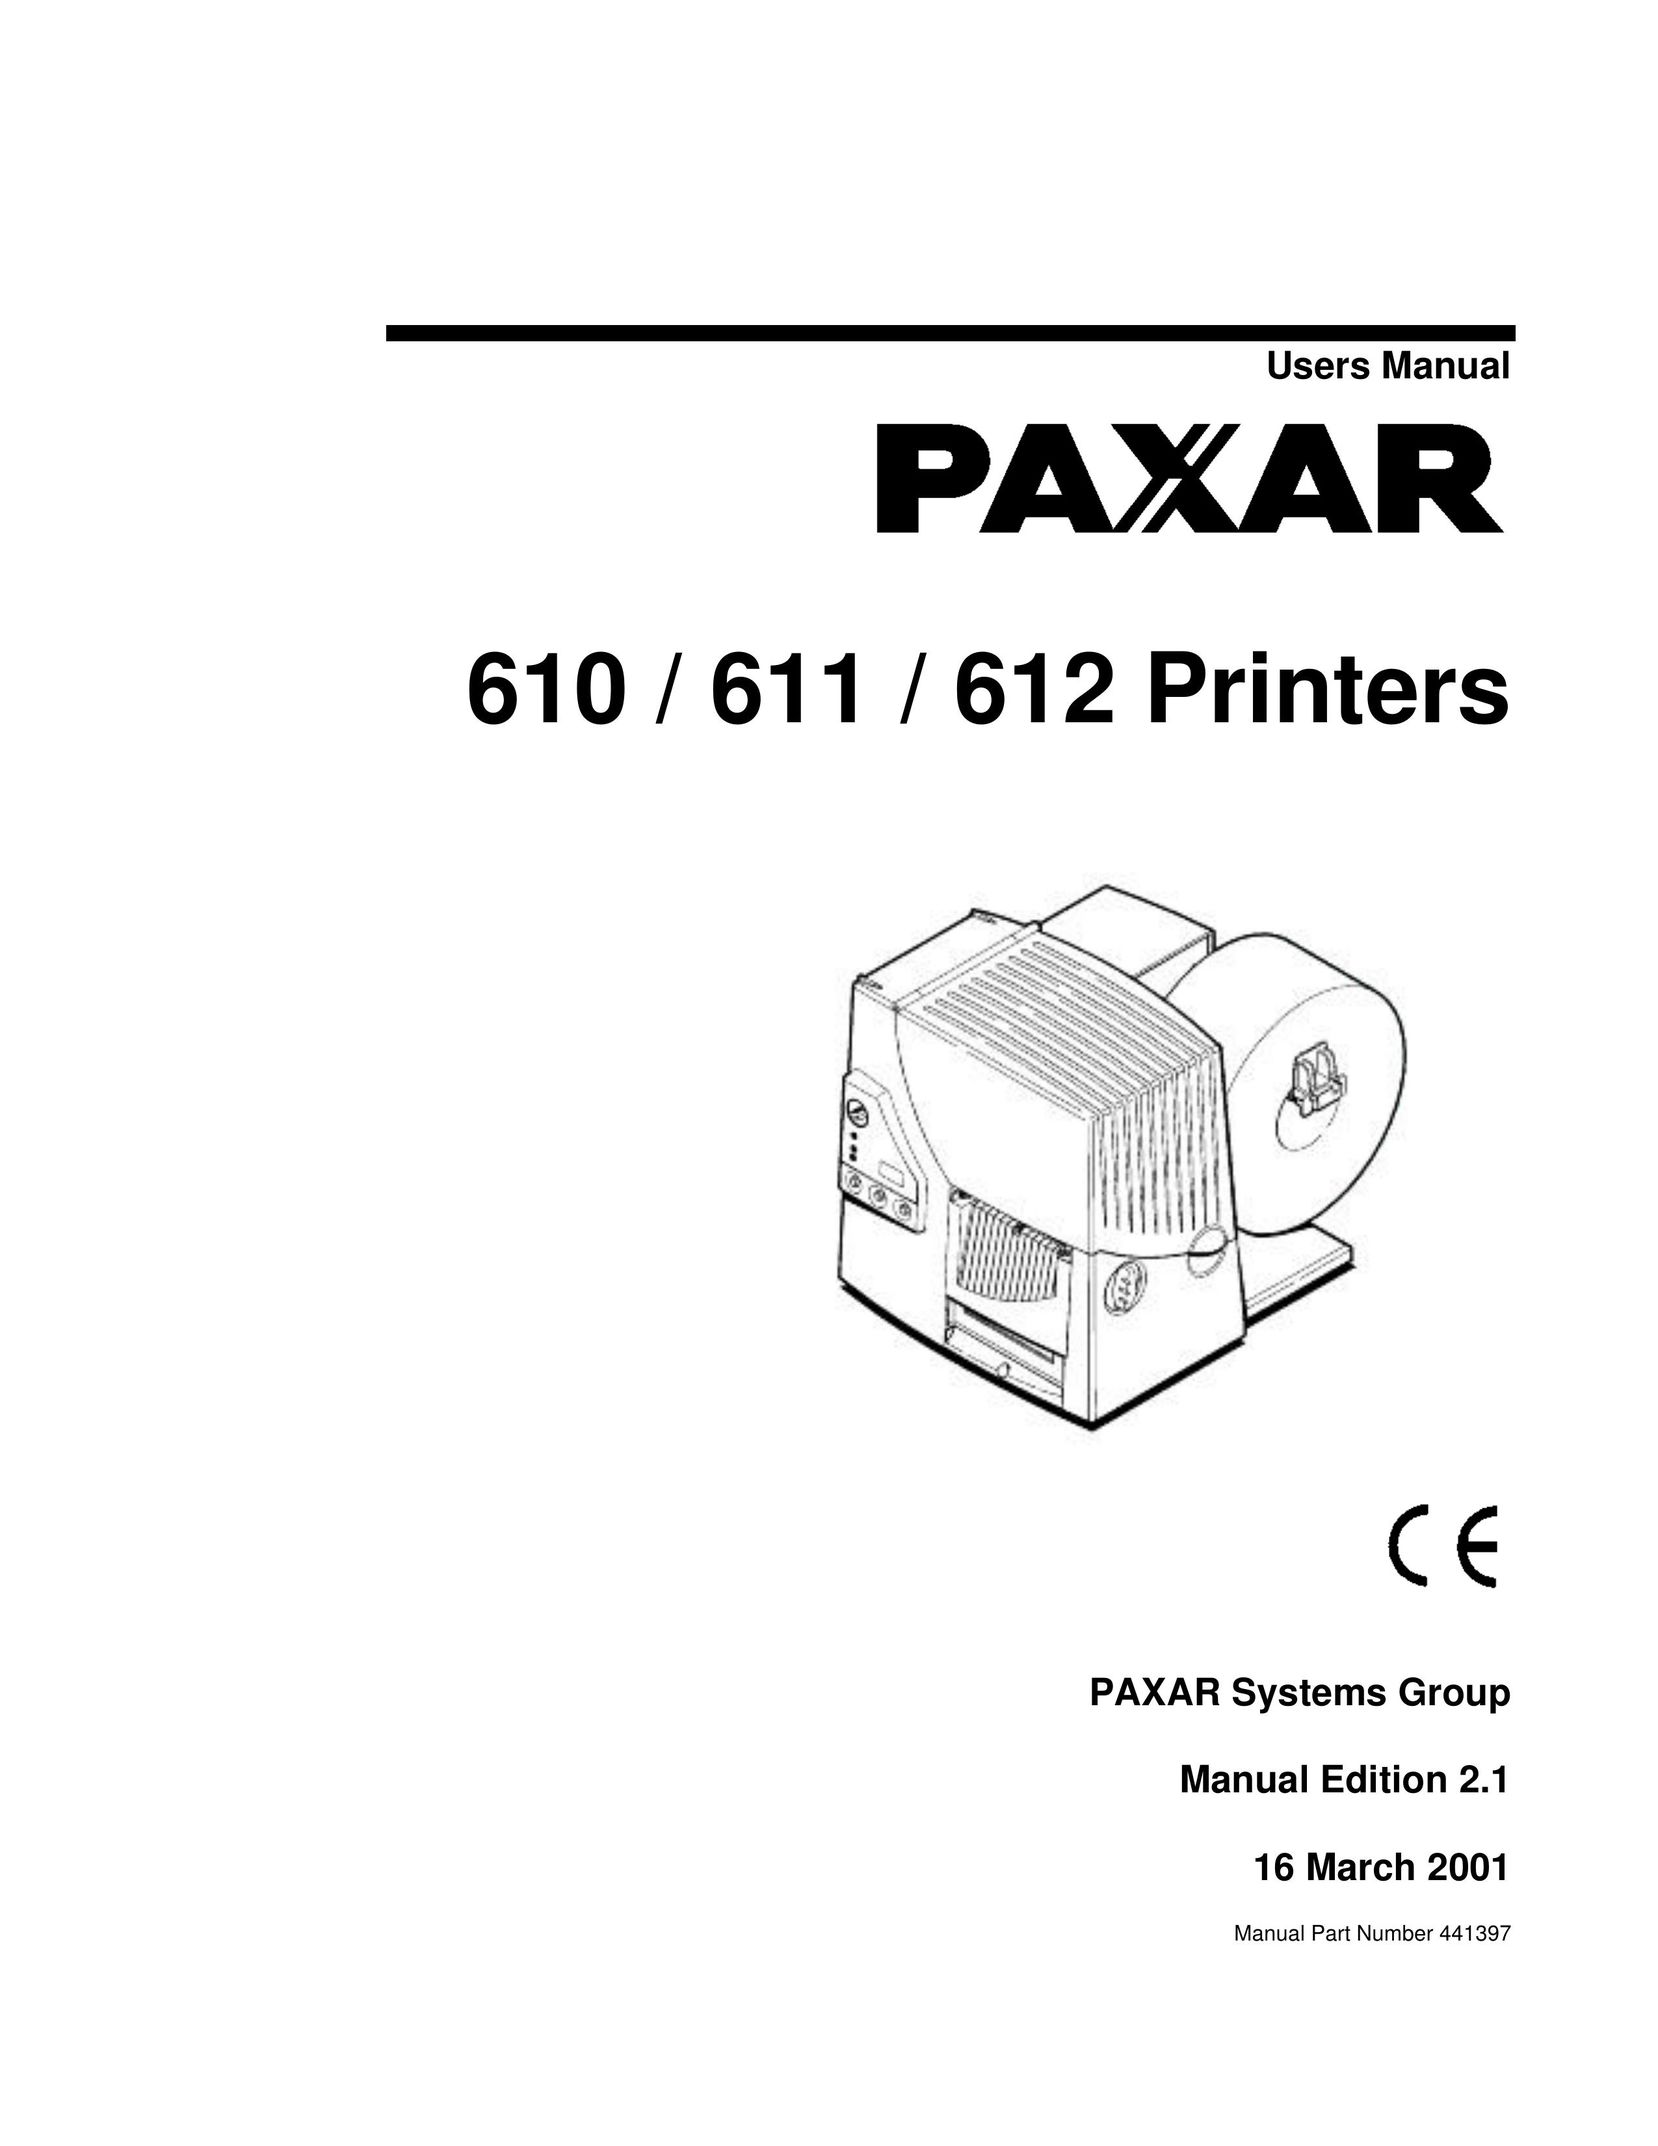 Paxar 611 Printer User Manual